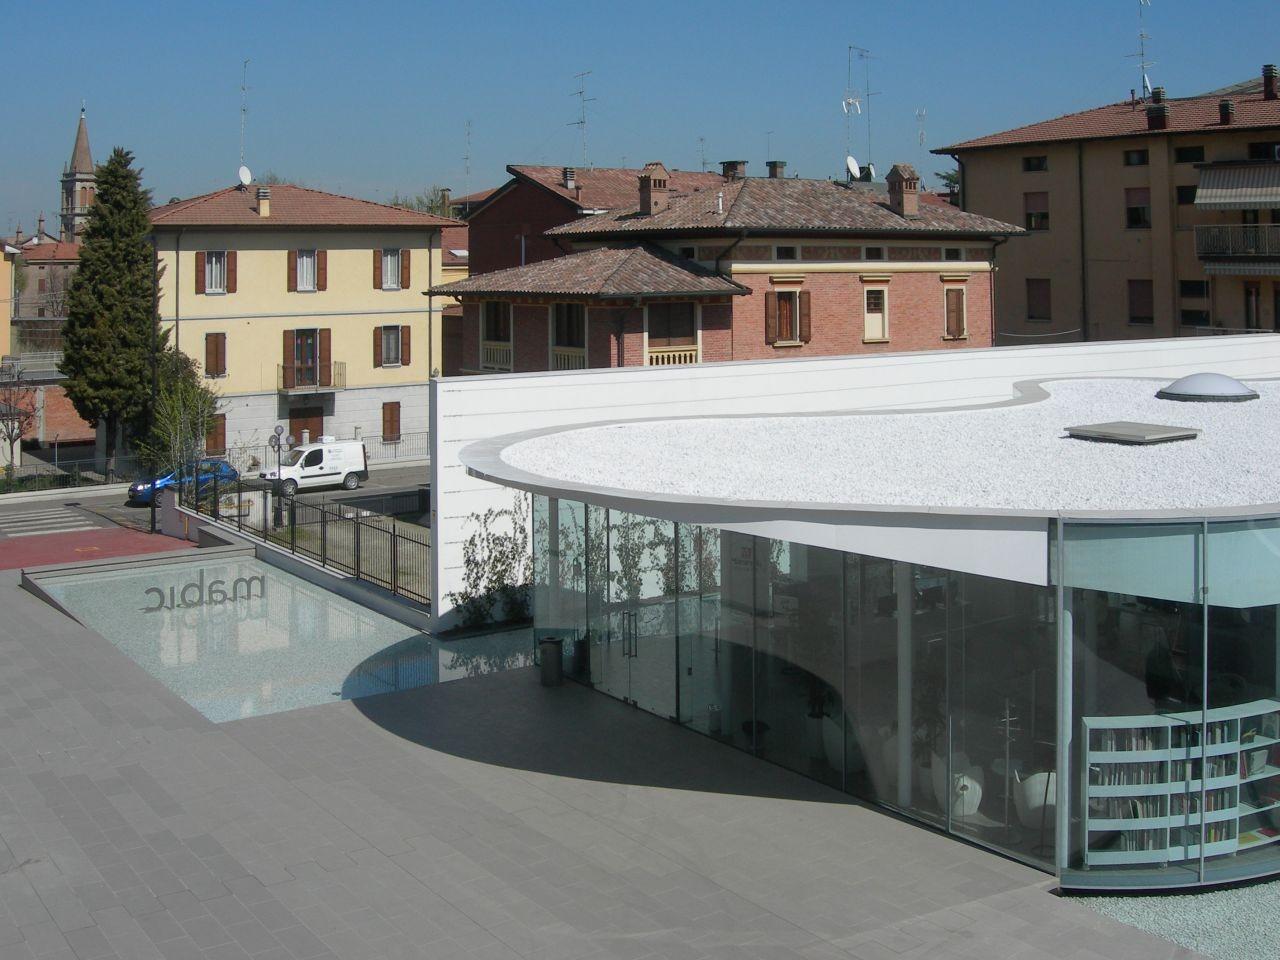 意大利小鎮玻璃圖書館 處處透入自然光